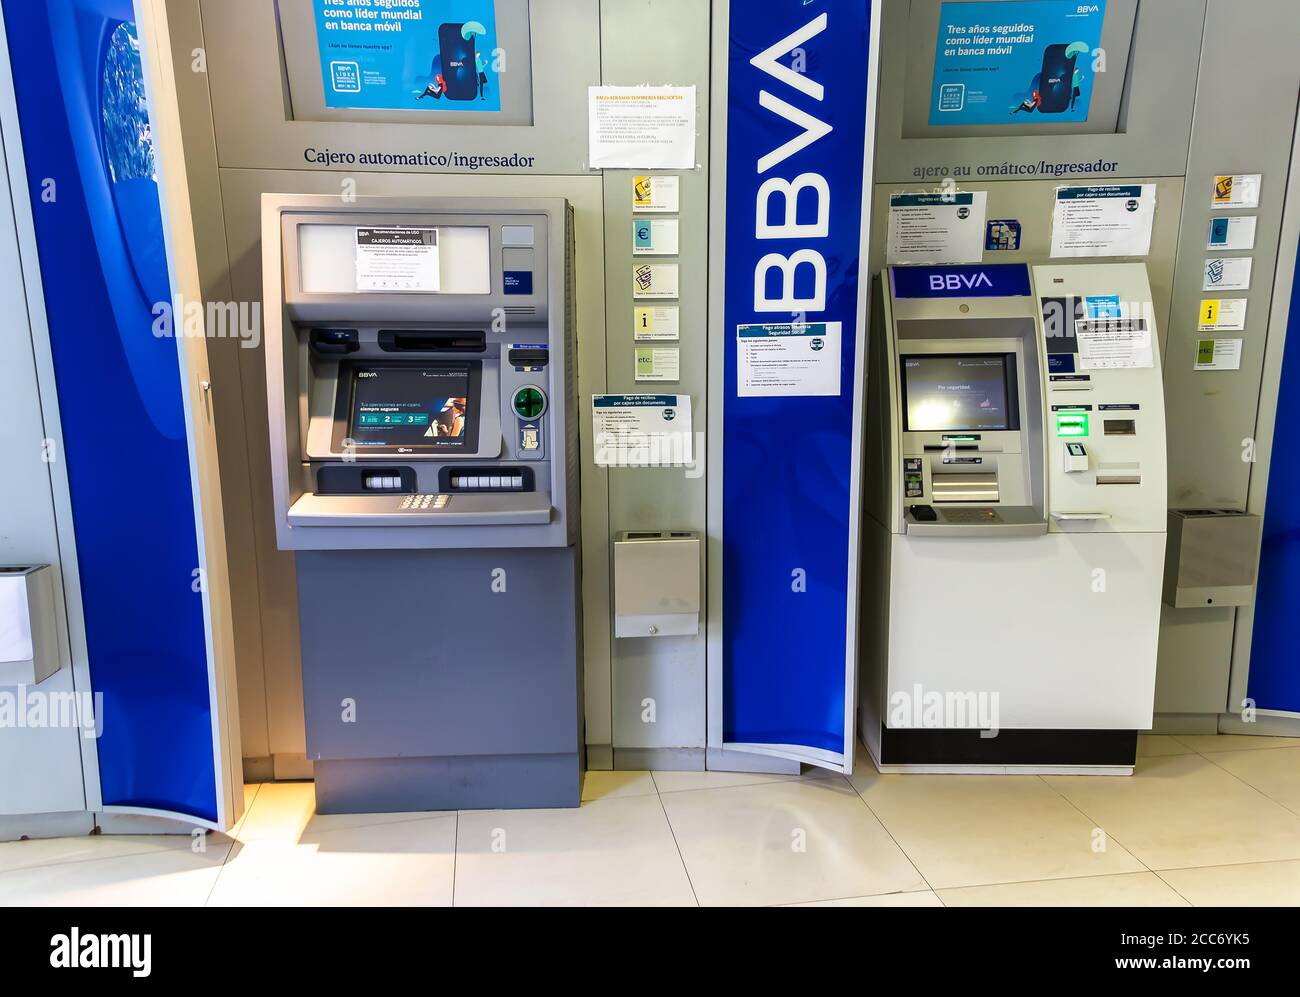 Huelva, Spagna - 16 agosto 2020: Varie macchine ATM della banca BBVA (Banco Bilbao Vizcaya Argentaria) nella città di Valverde del Camino, Huelva, Spa Foto Stock